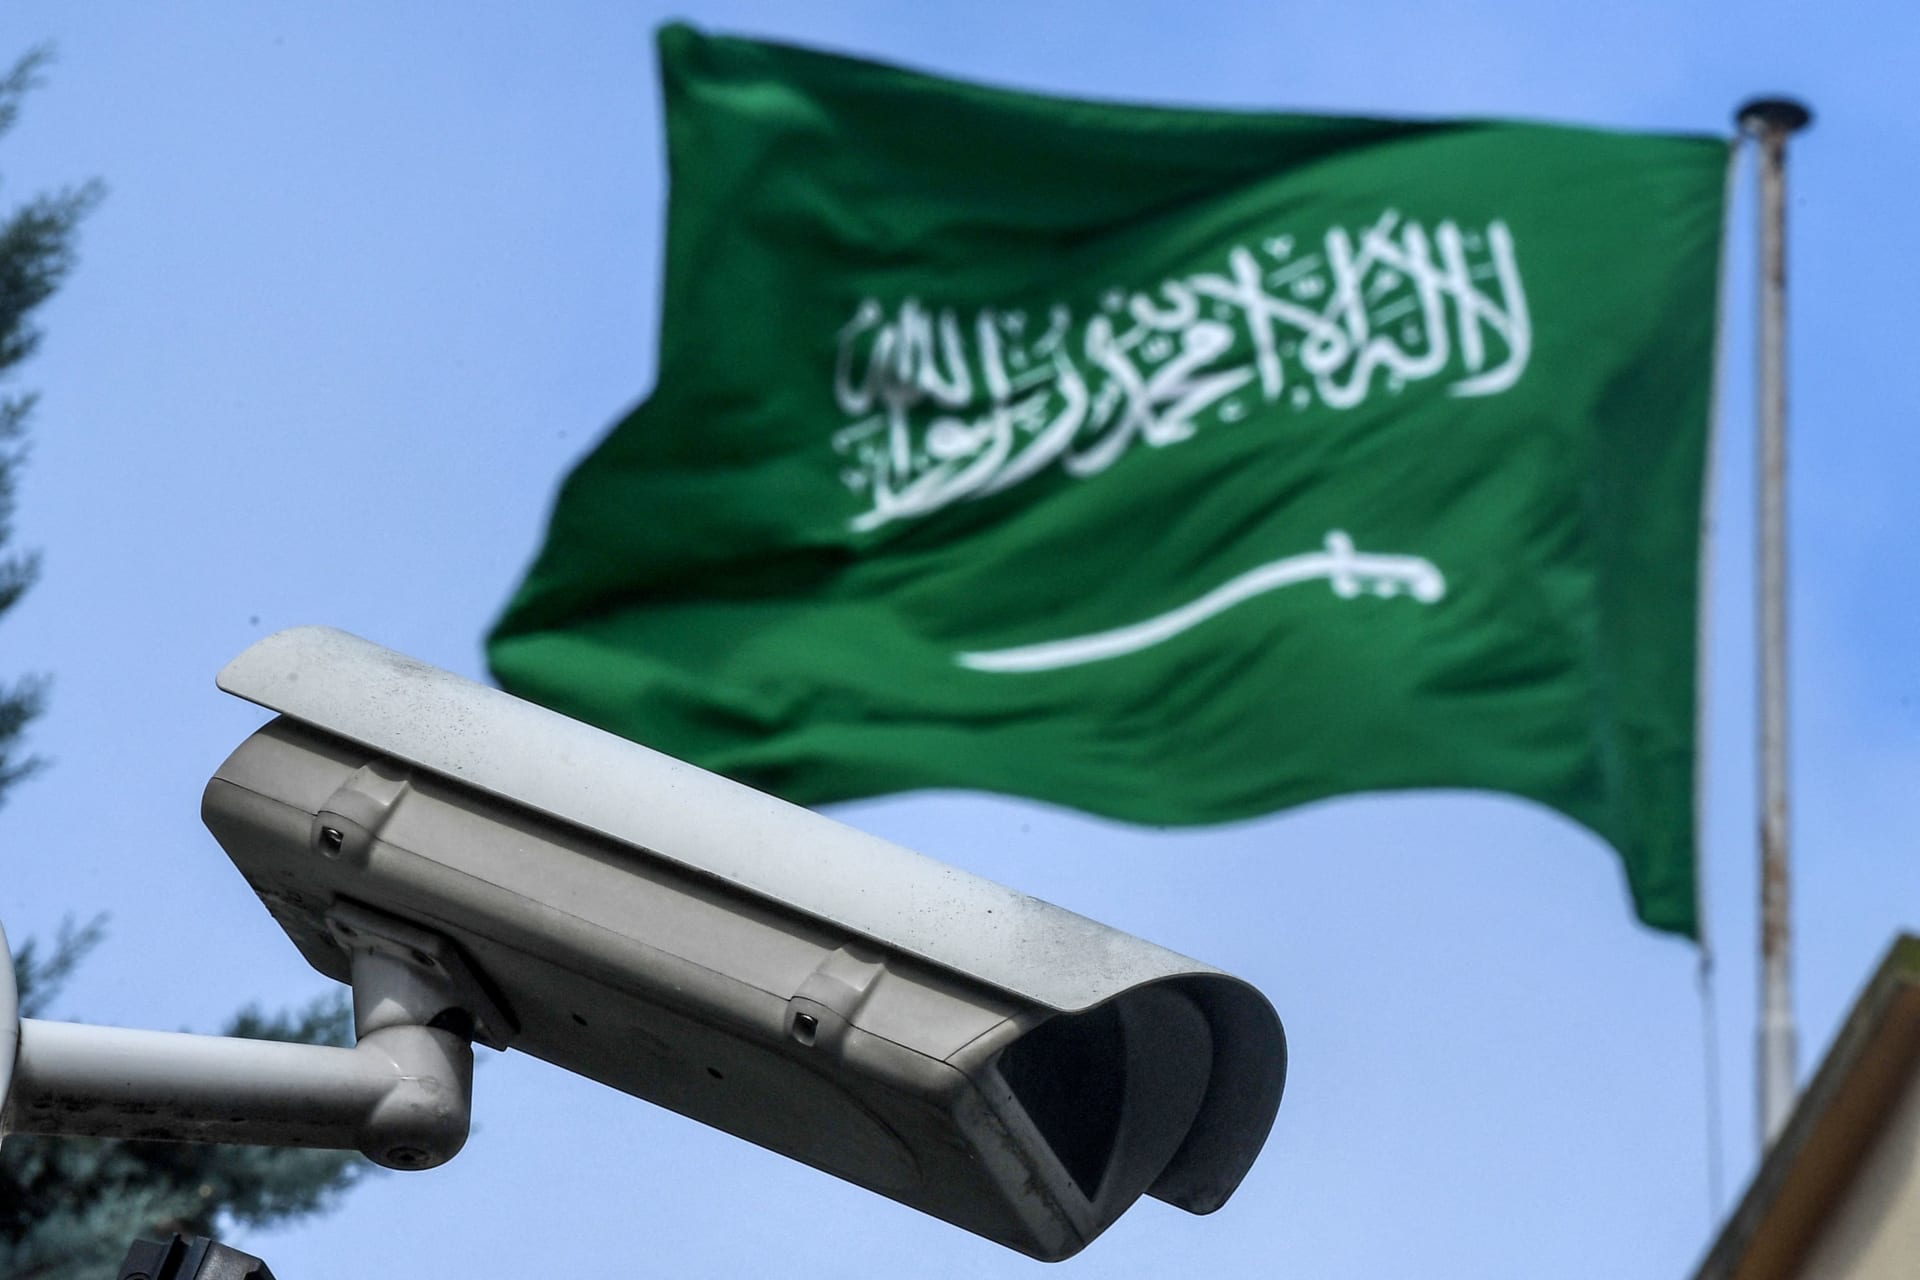 السعودية.. تفاعل واسع بعد إعلان قواعد جديدة للمشروبات الكحولية للدبلوماسيين غير المسلمين 